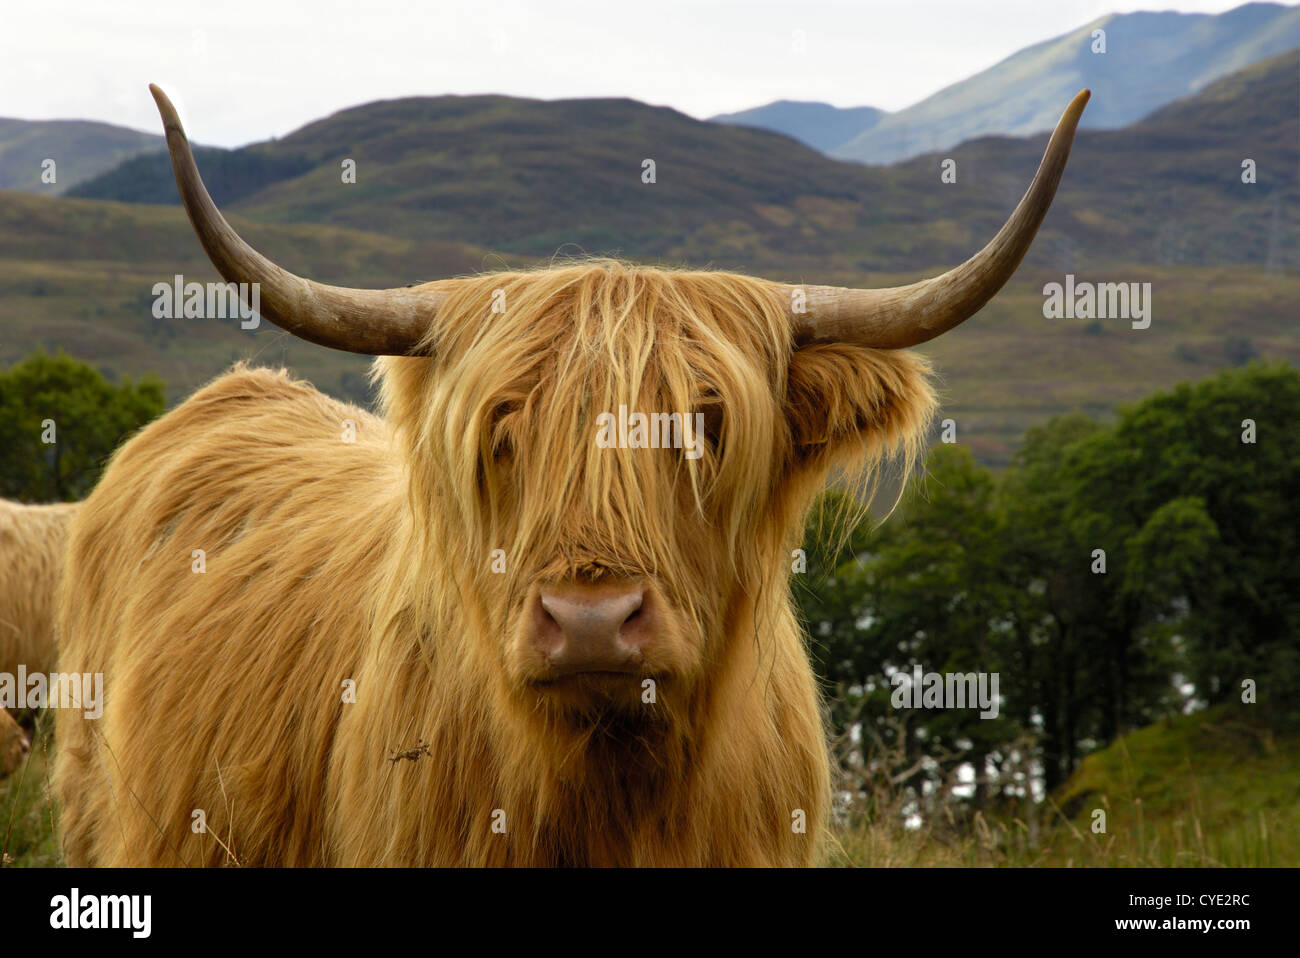 Au-dessus de Highland cattle Loch Katrine, Parc national du Loch Lomond et des Trossachs, Stirling, Ecosse Banque D'Images